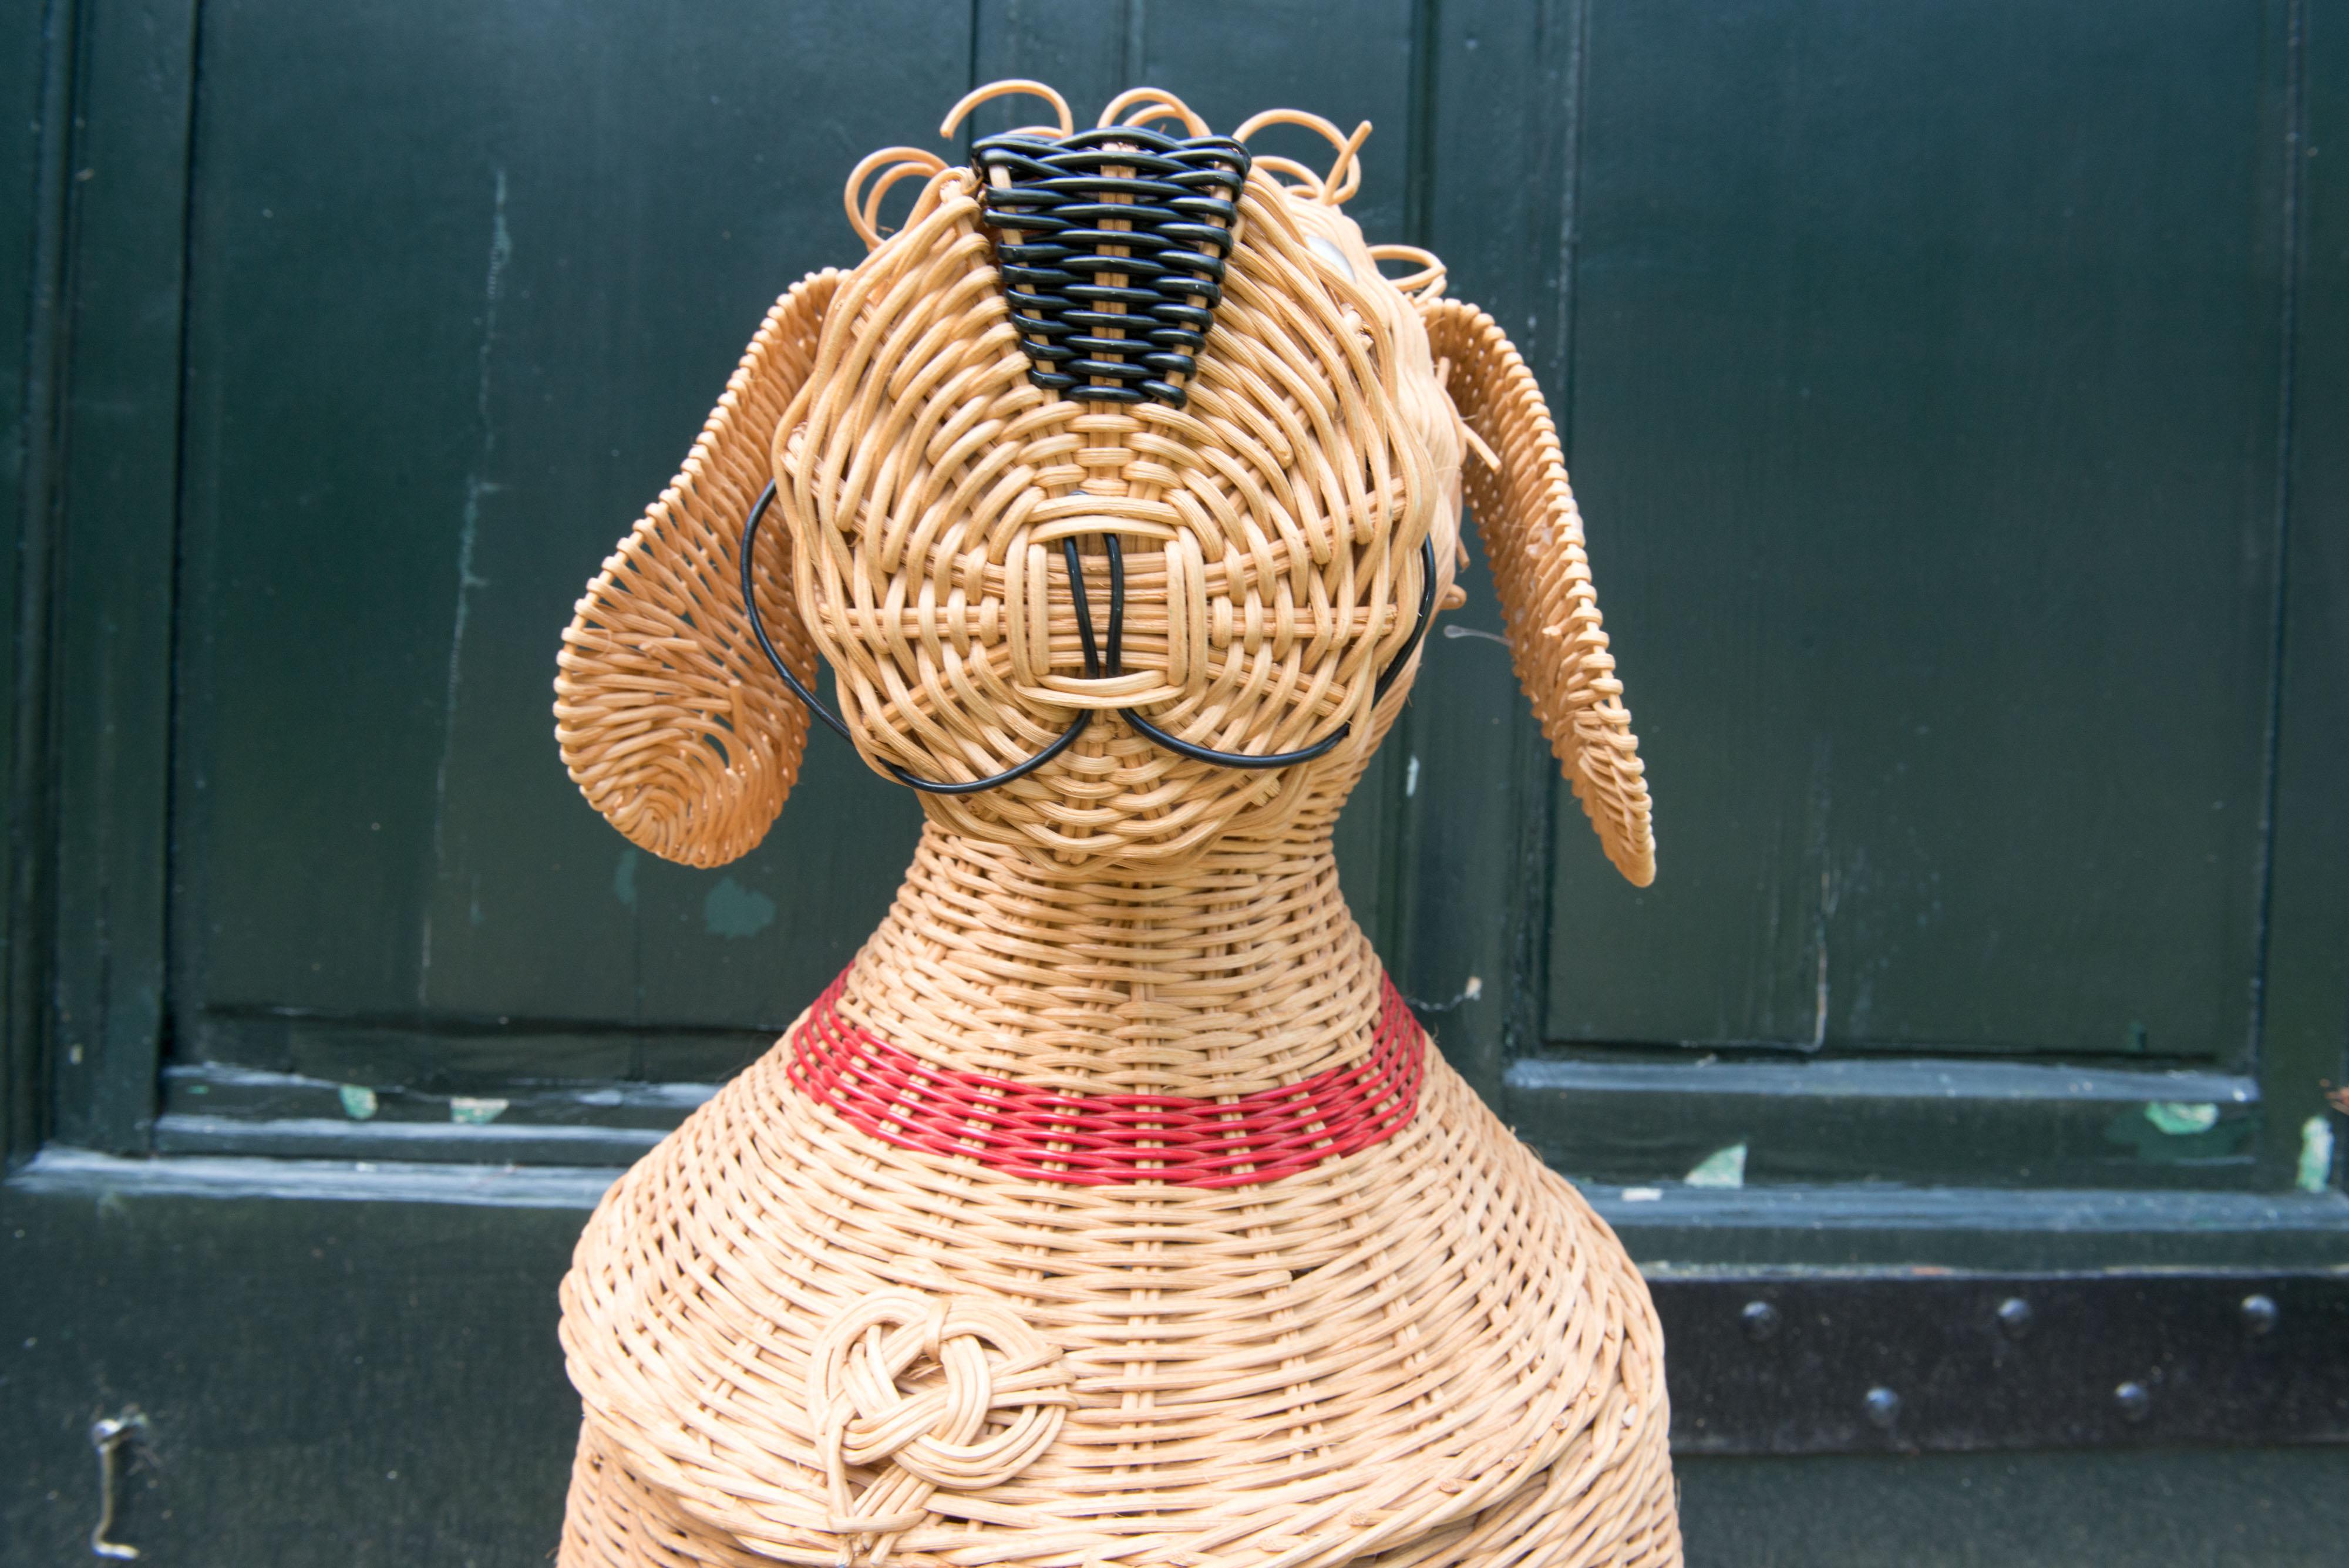 animal shaped basket